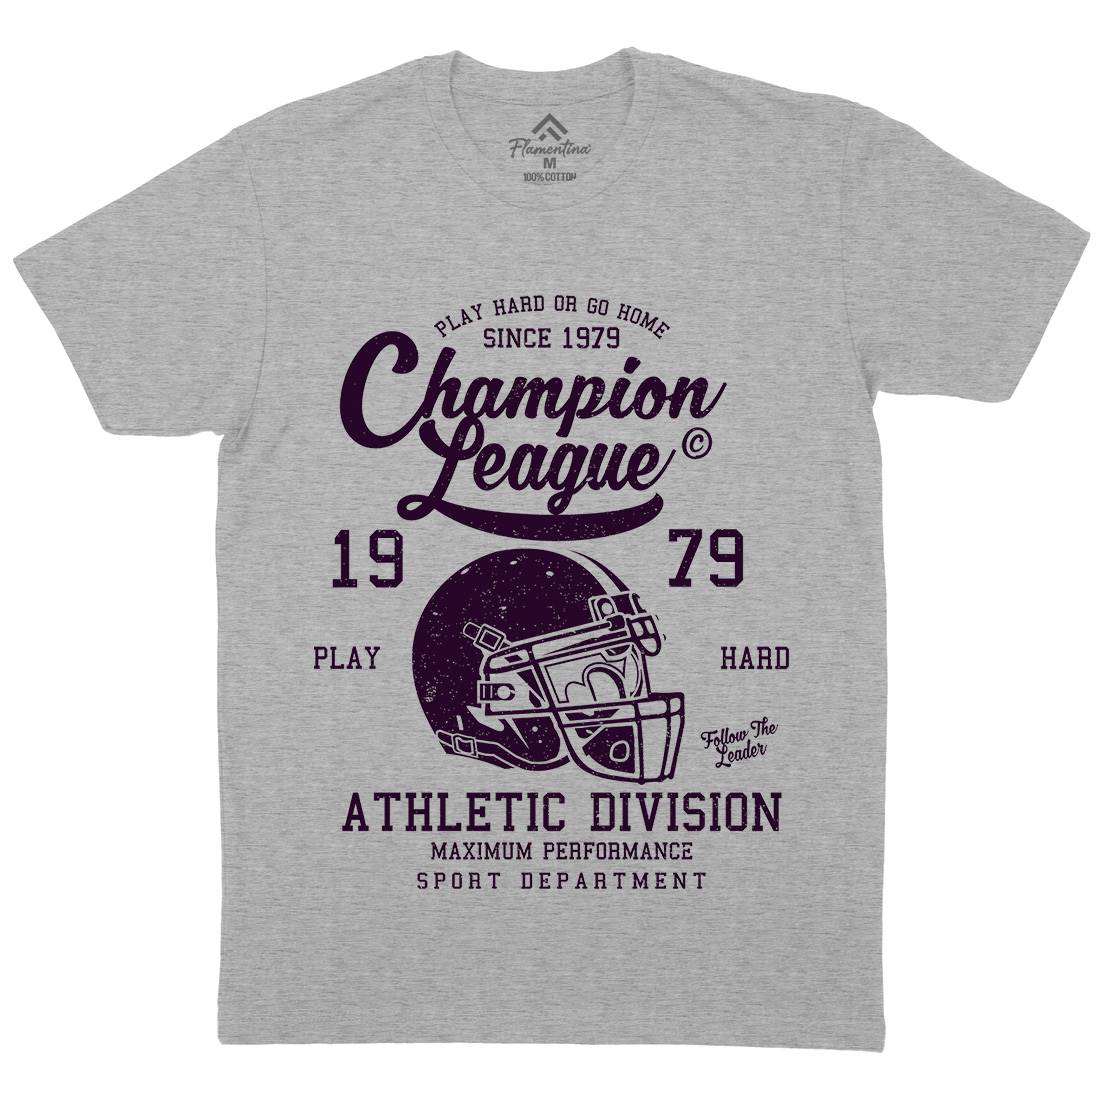 Champion League Mens Crew Neck T-Shirt Sport A031